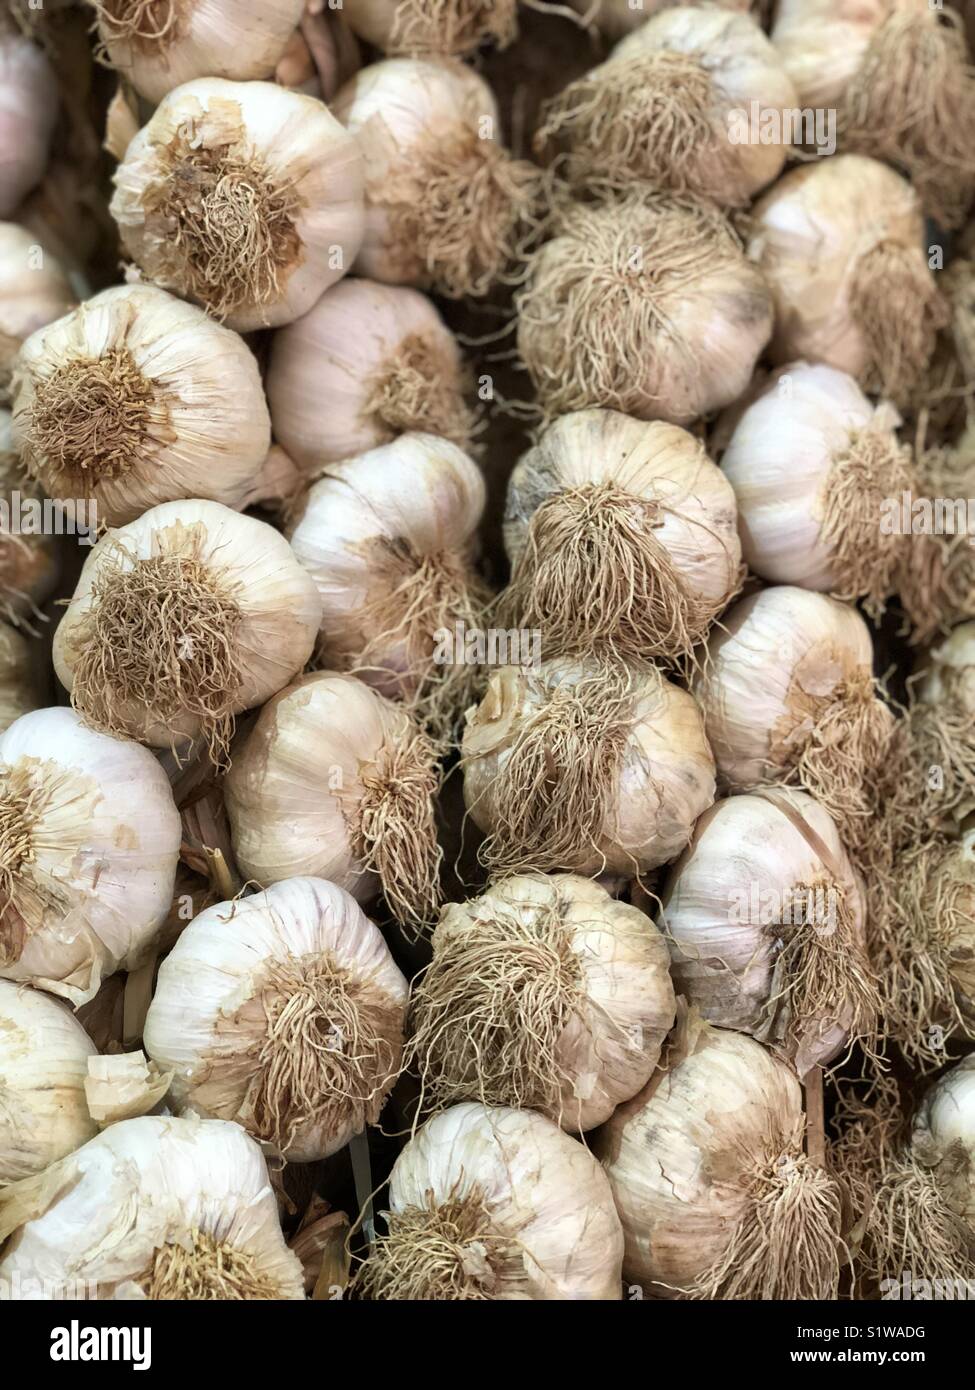 Braids of garlic Stock Photo